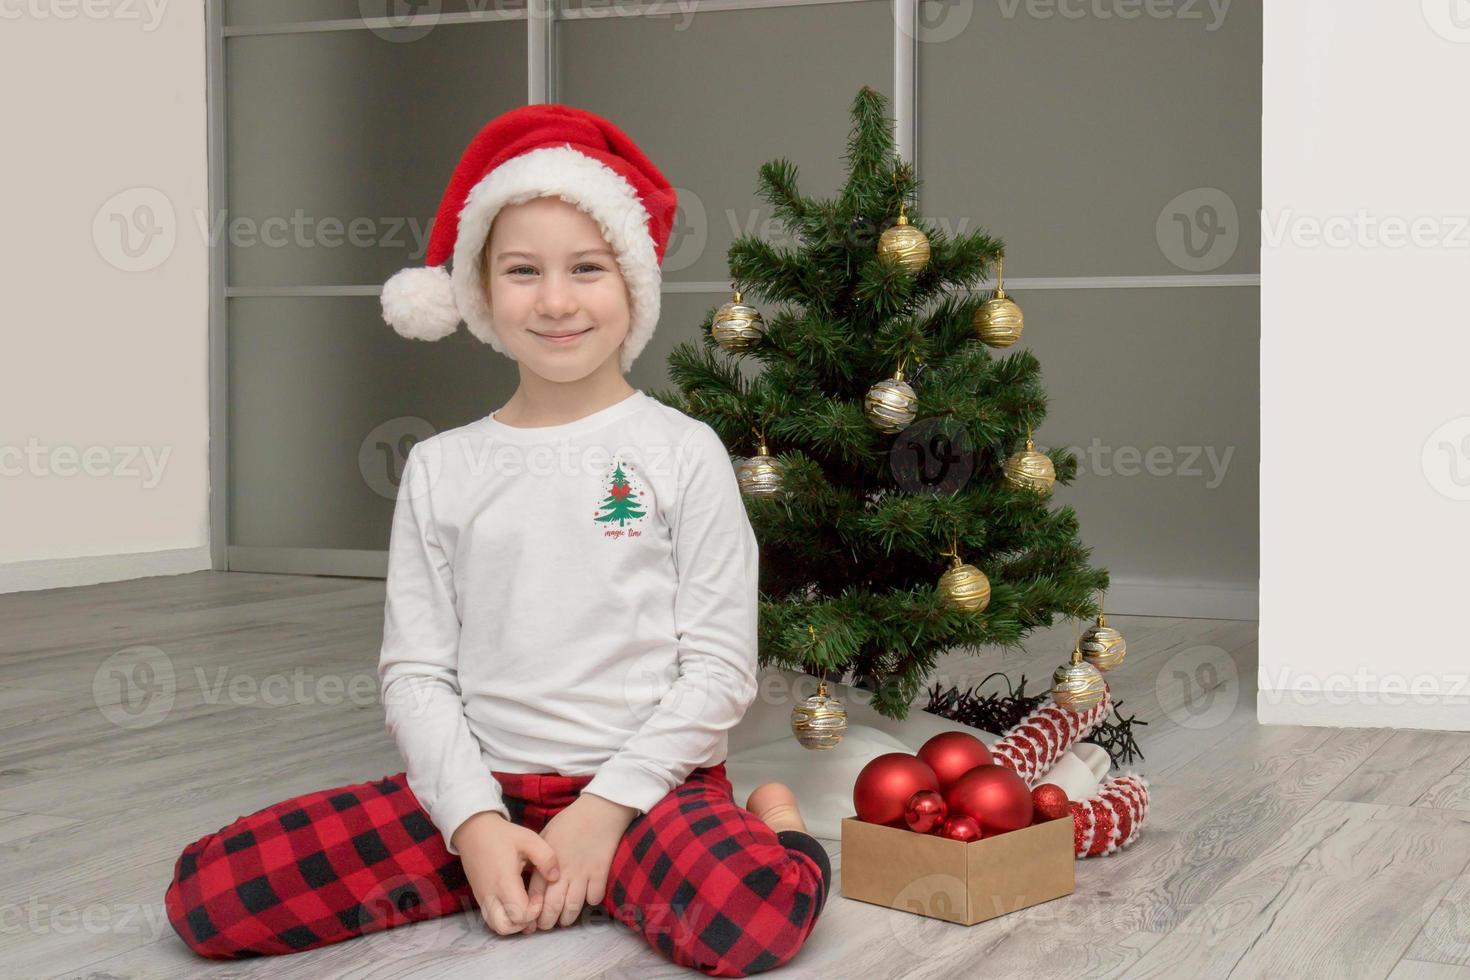 menina de pijama xadrez e um chapéu de papai noel senta-se ao lado da árvore de natal e sorri, natal foto